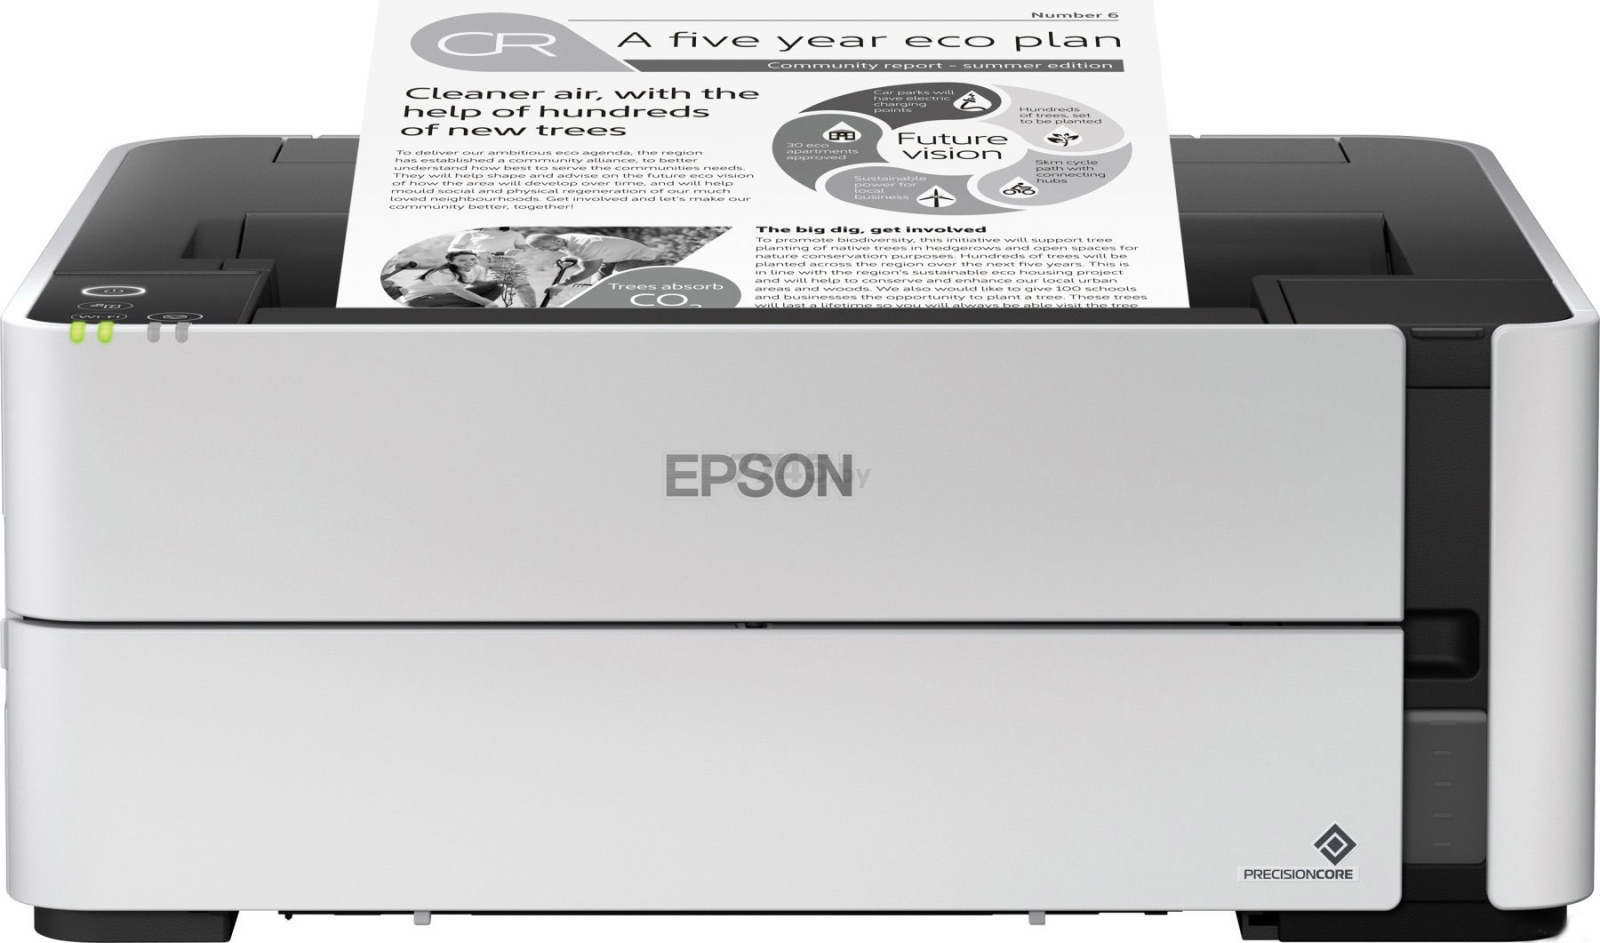 Принтер струйный EPSON M1170 (C11CH44404)